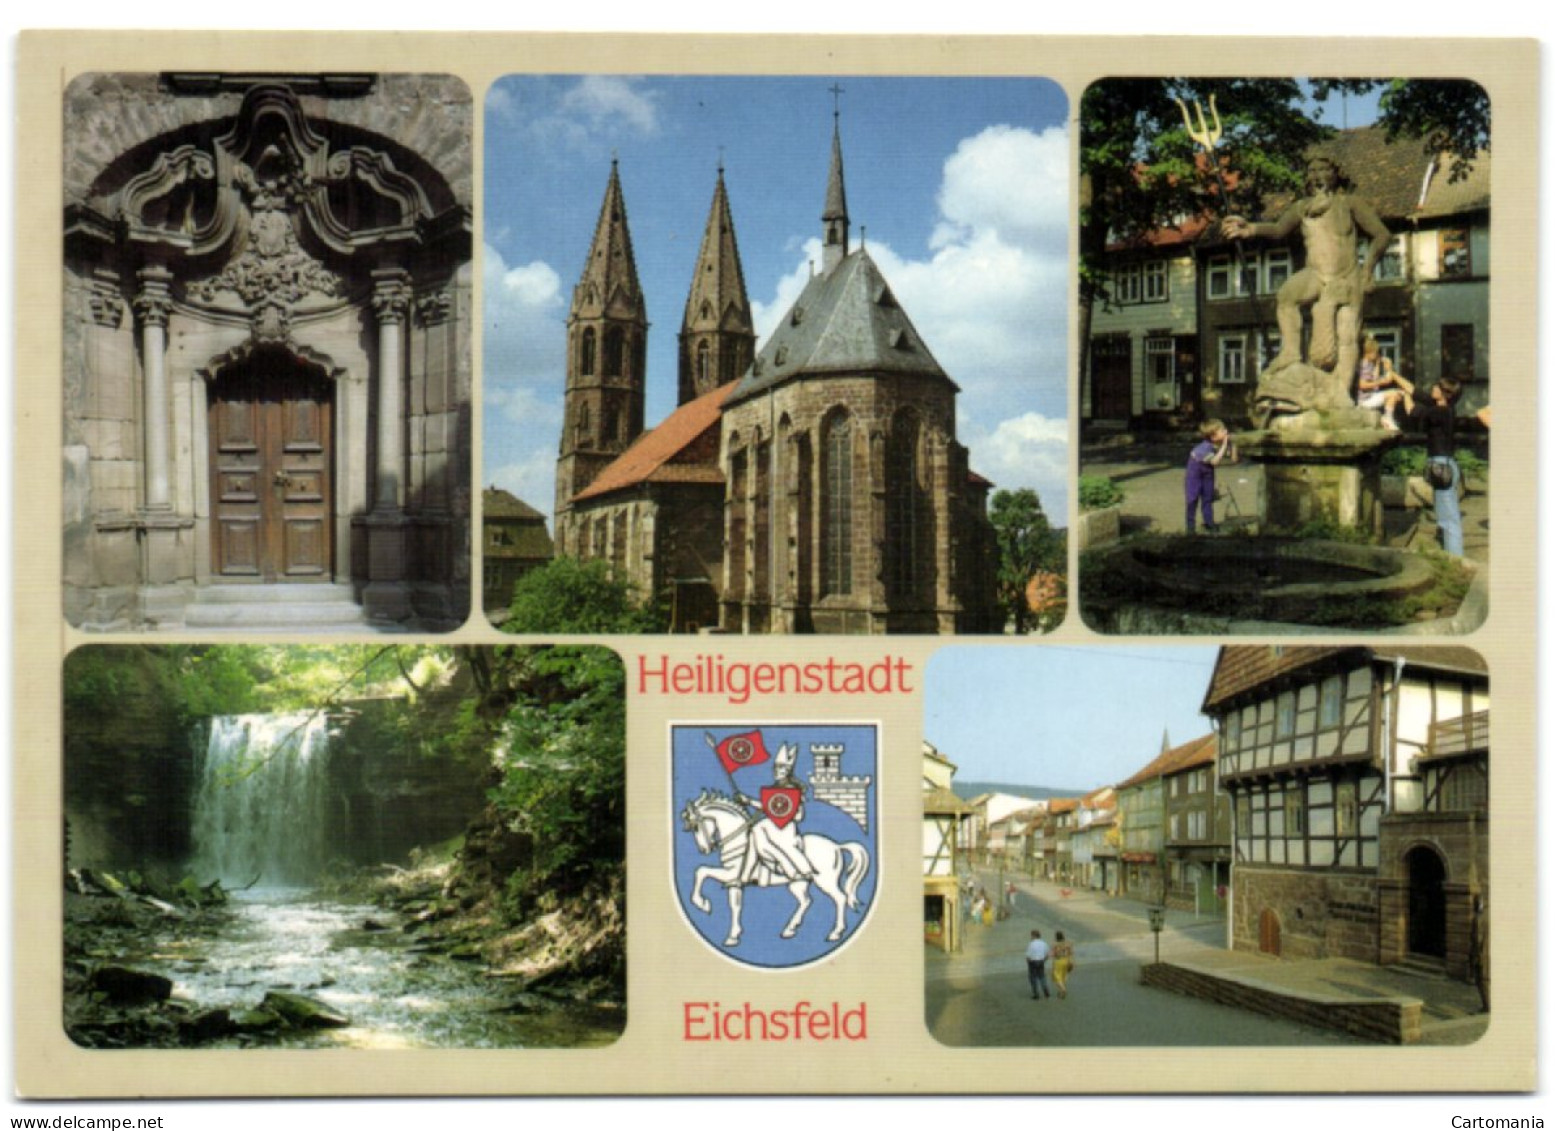 Heiligenstadt - Eichsfeld - Heiligenstadt